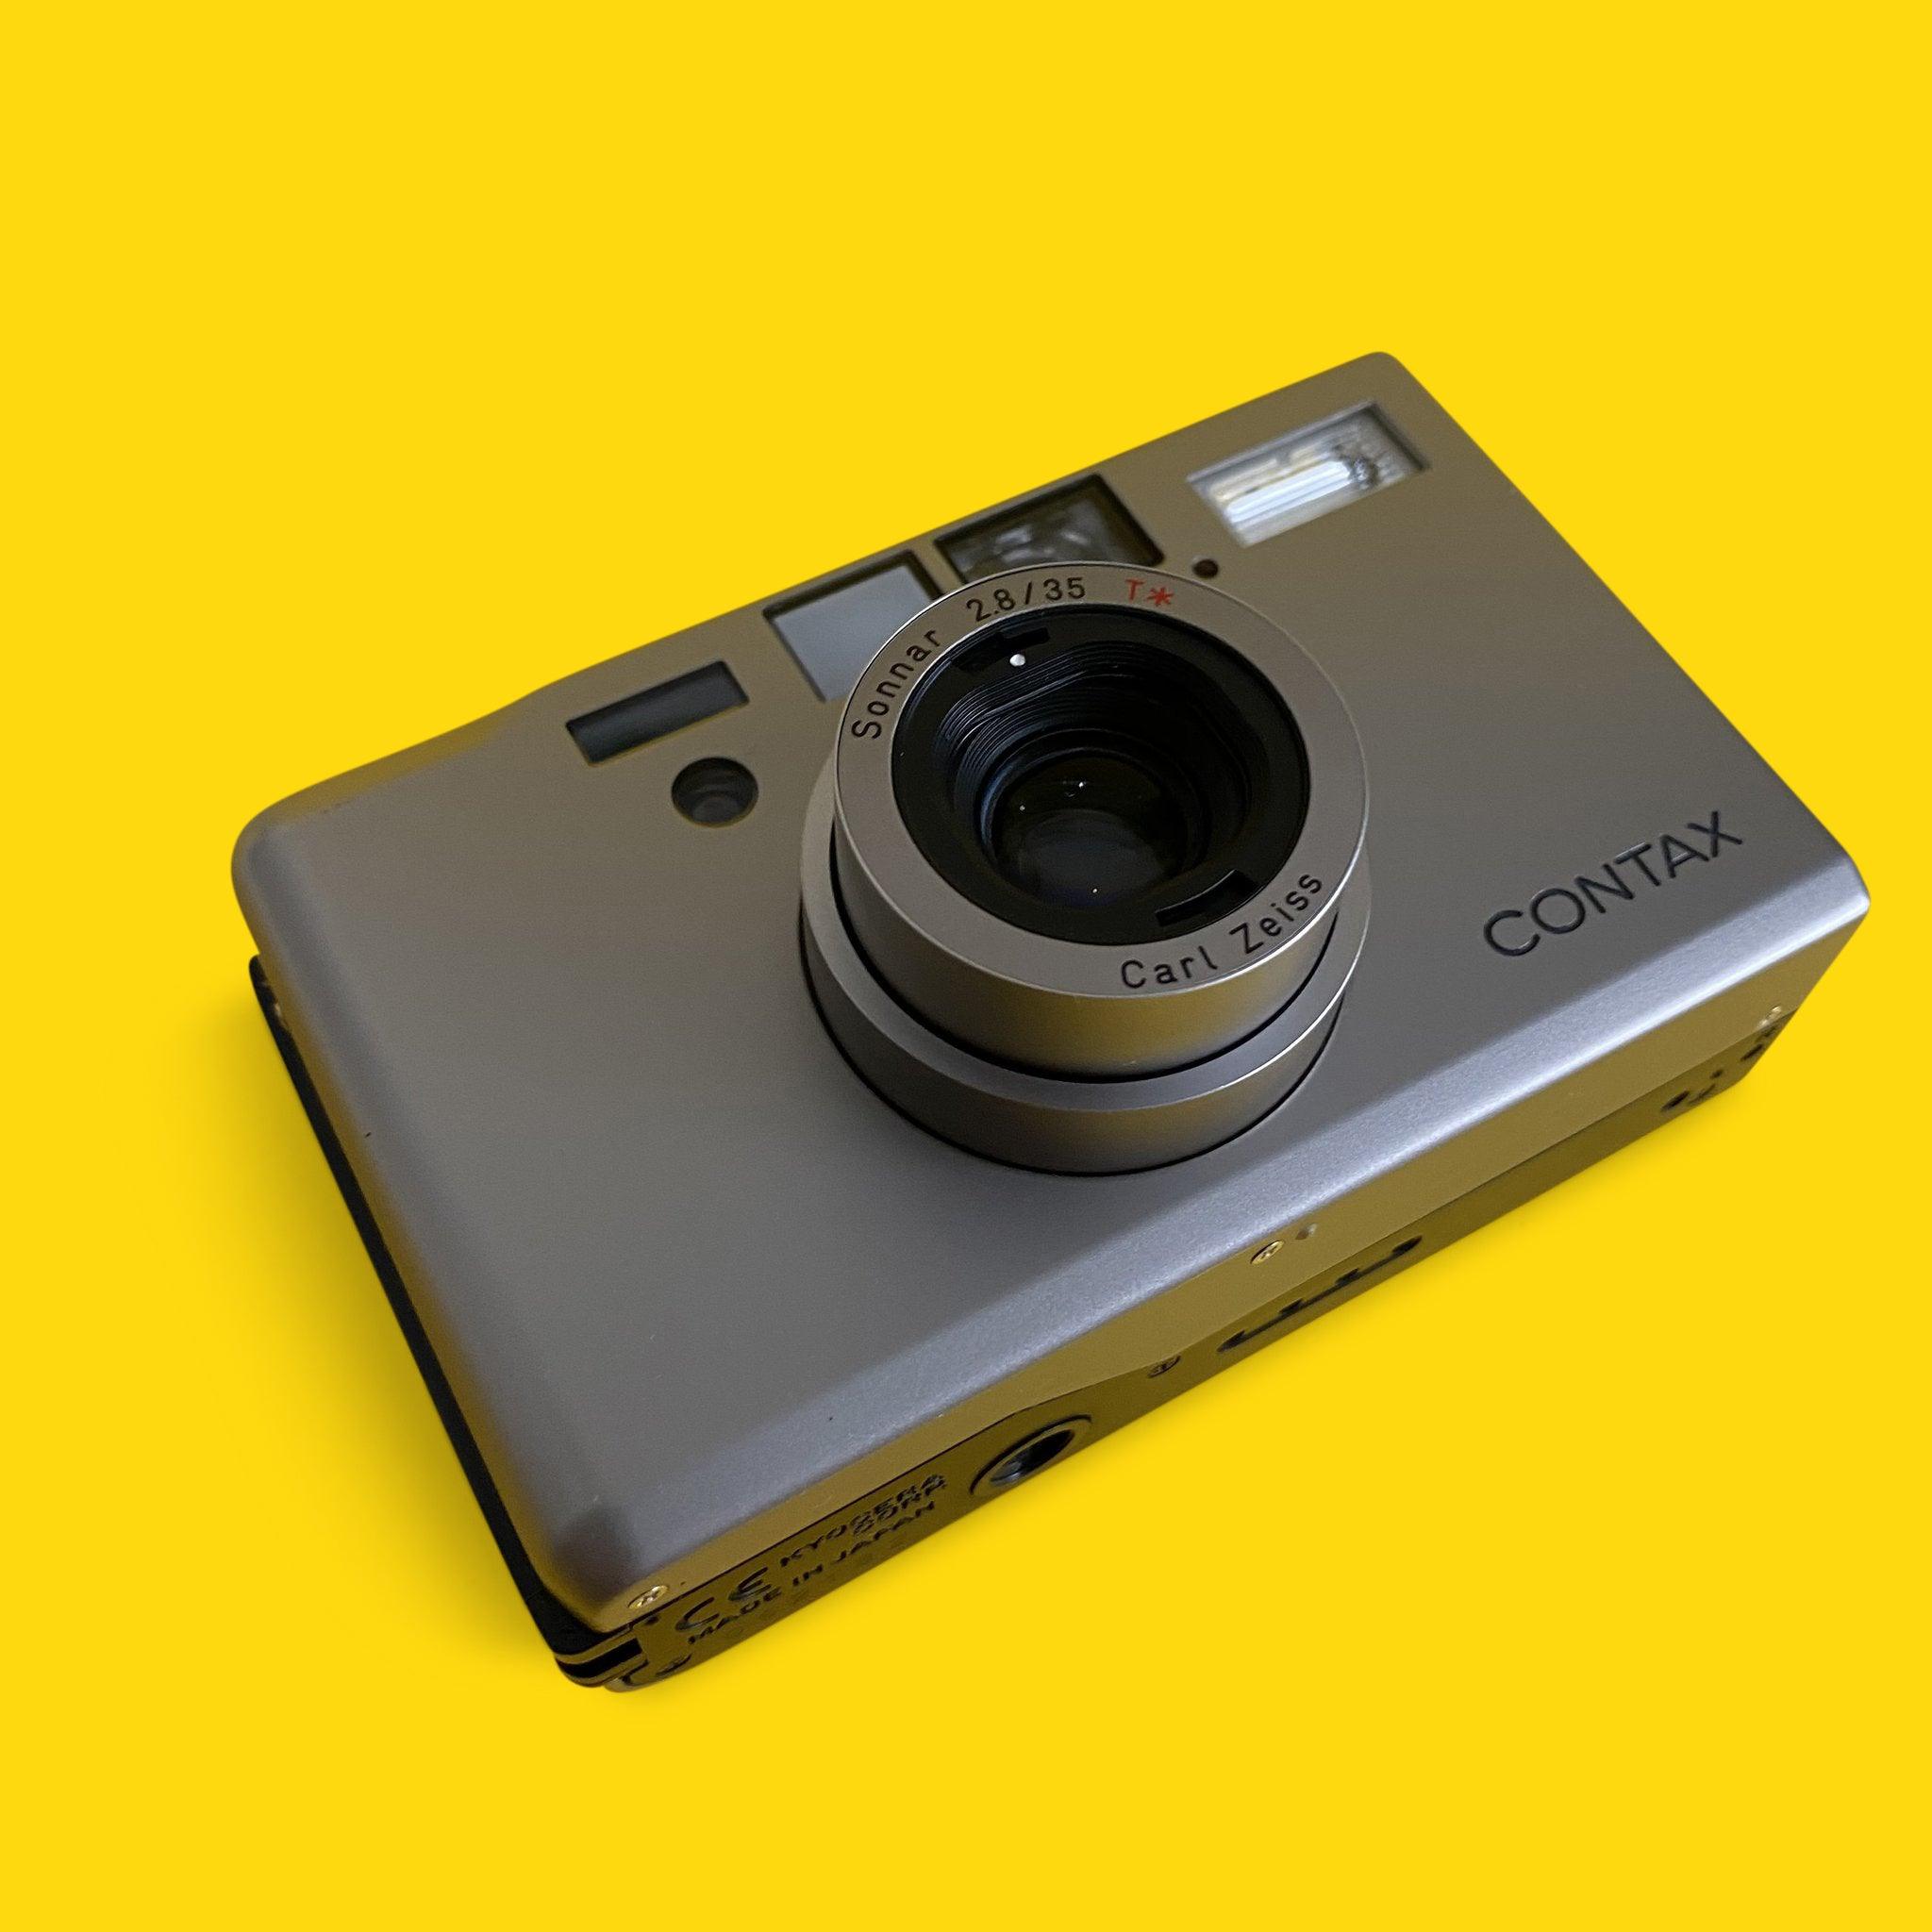 コンタックス T3 タイタン シルバー 35mm フィルム カメラ ポイント & シュート 35mm f/2.8 レンズ付き